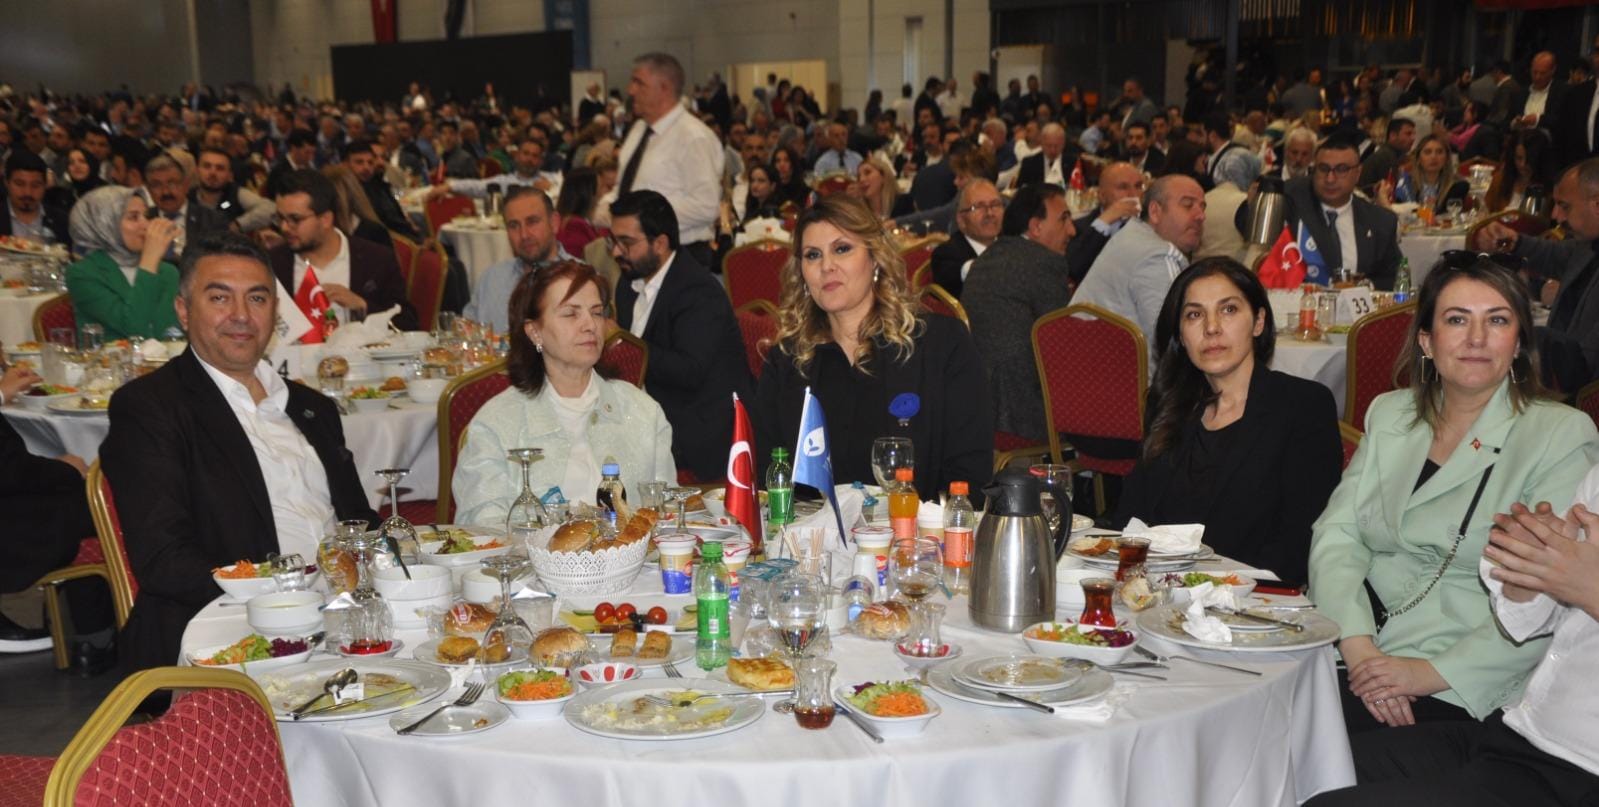 İl Teşkilat Başkanımız Mehmet Bekhan ve İl Kadın Kolları Başkanımız Perihan Toğay, DEVA Partisi İstanbul İl Başkanlığı'nın düzenlediği 'Millet Sofrası' iftar programına katıldı.